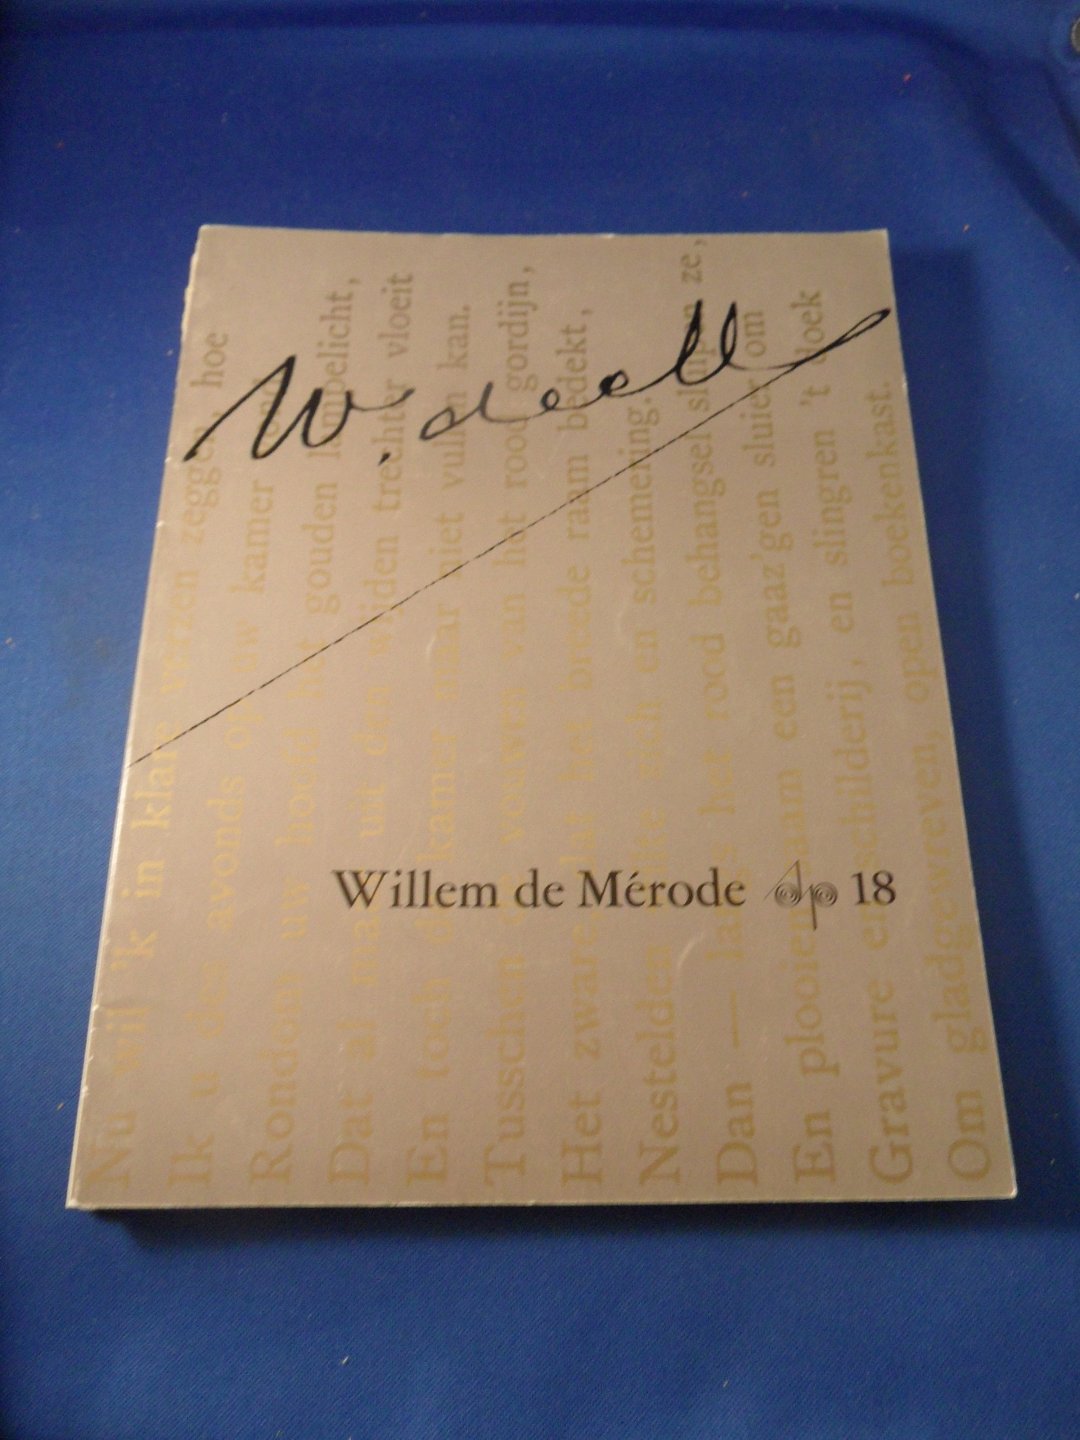  - Willem de Mérode. Schrijversprentenboek 18